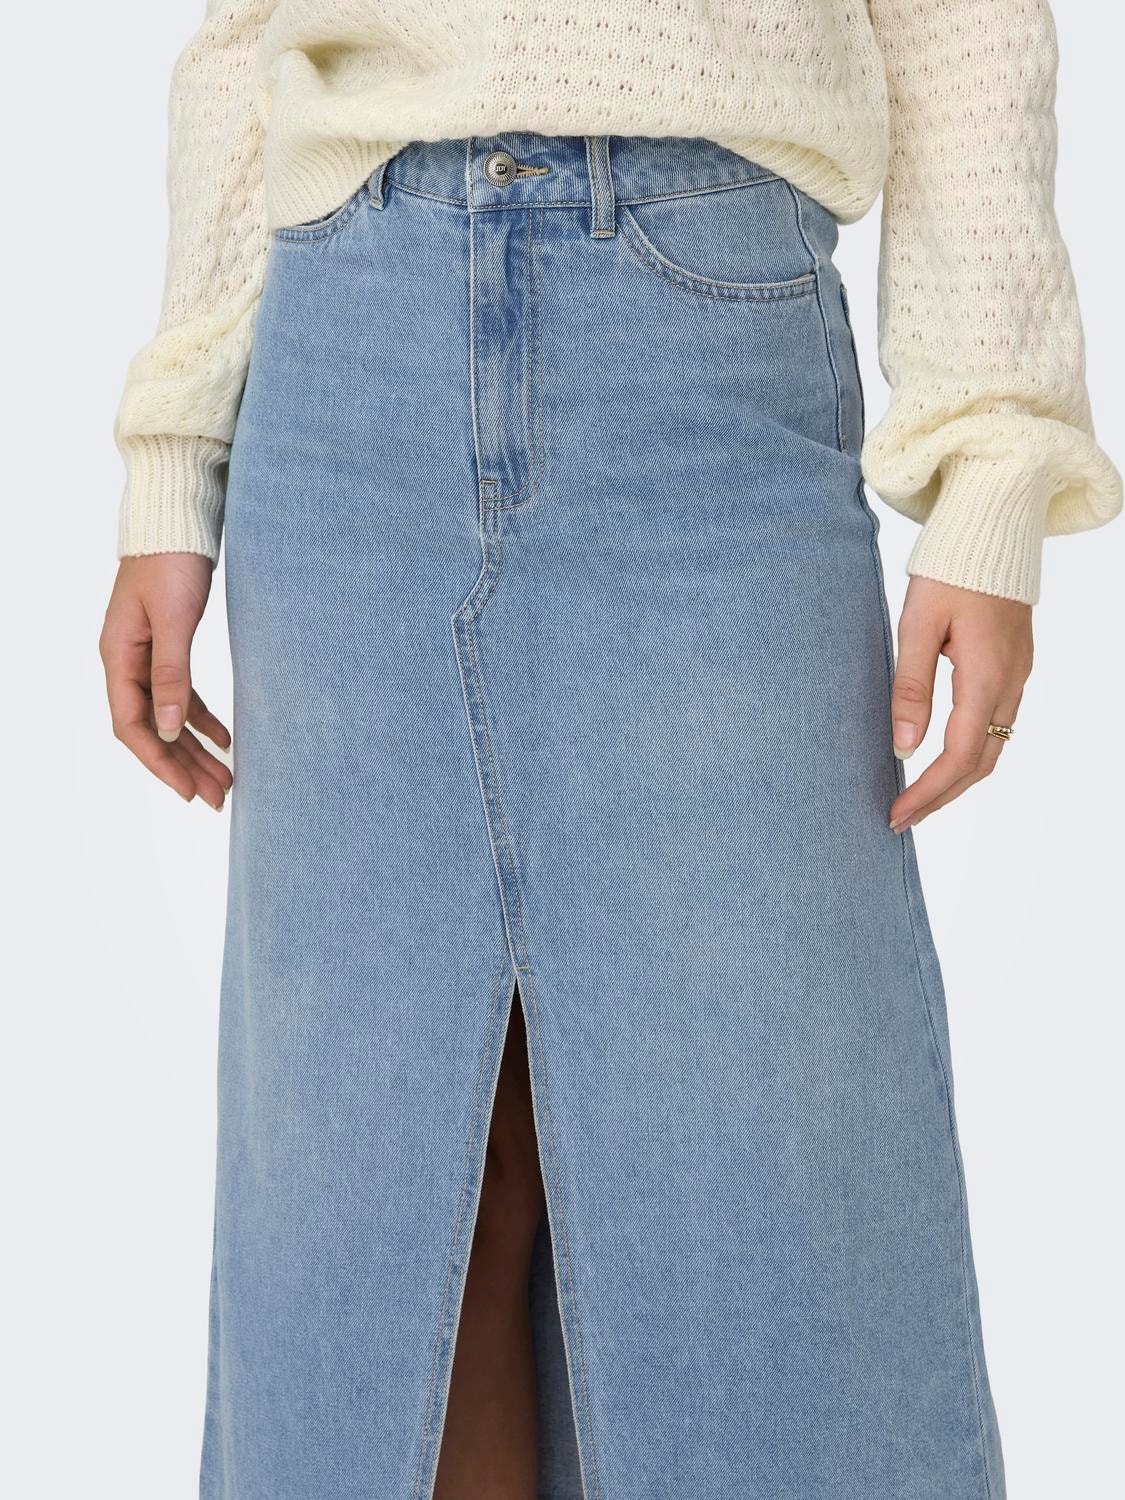 ONLY High waist Long skirt -Light Blue Denim - 15317441